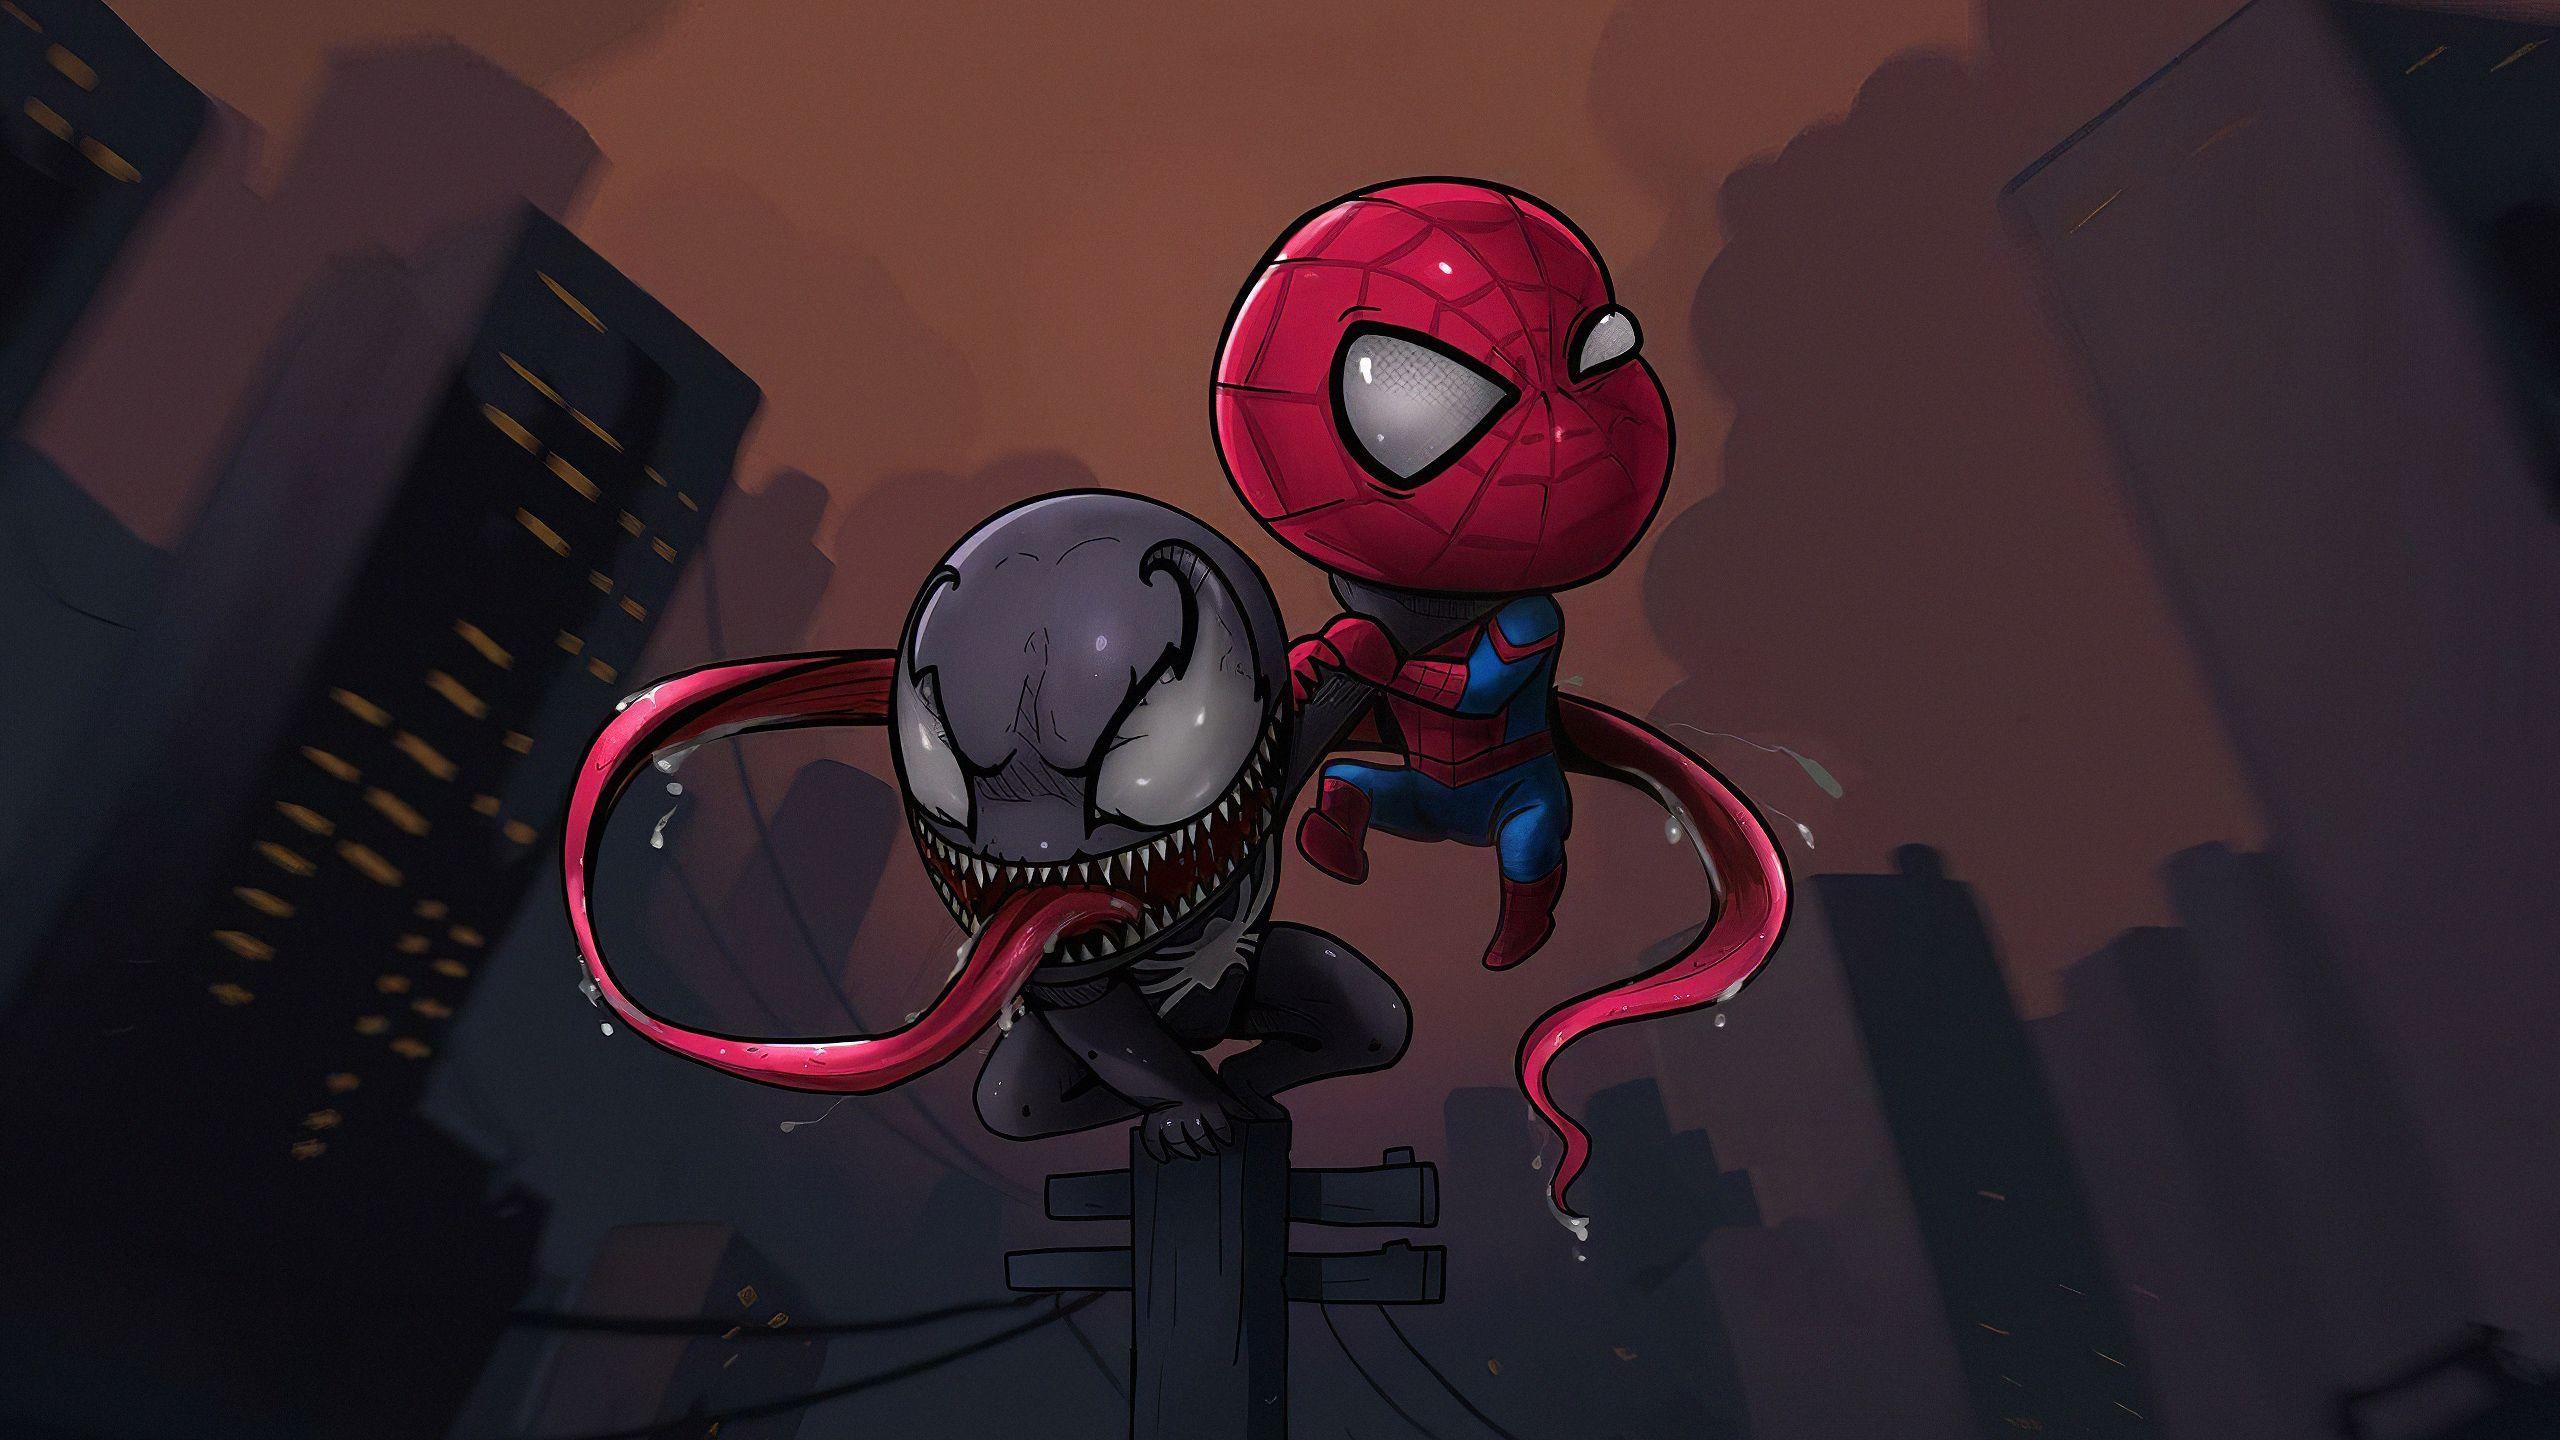 2560x1440 Chibi Spider Venom, Siêu anh hùng HD, Hình nền 4k, Hình ảnh, Bối cảnh, Hình ảnh và Hình ảnh